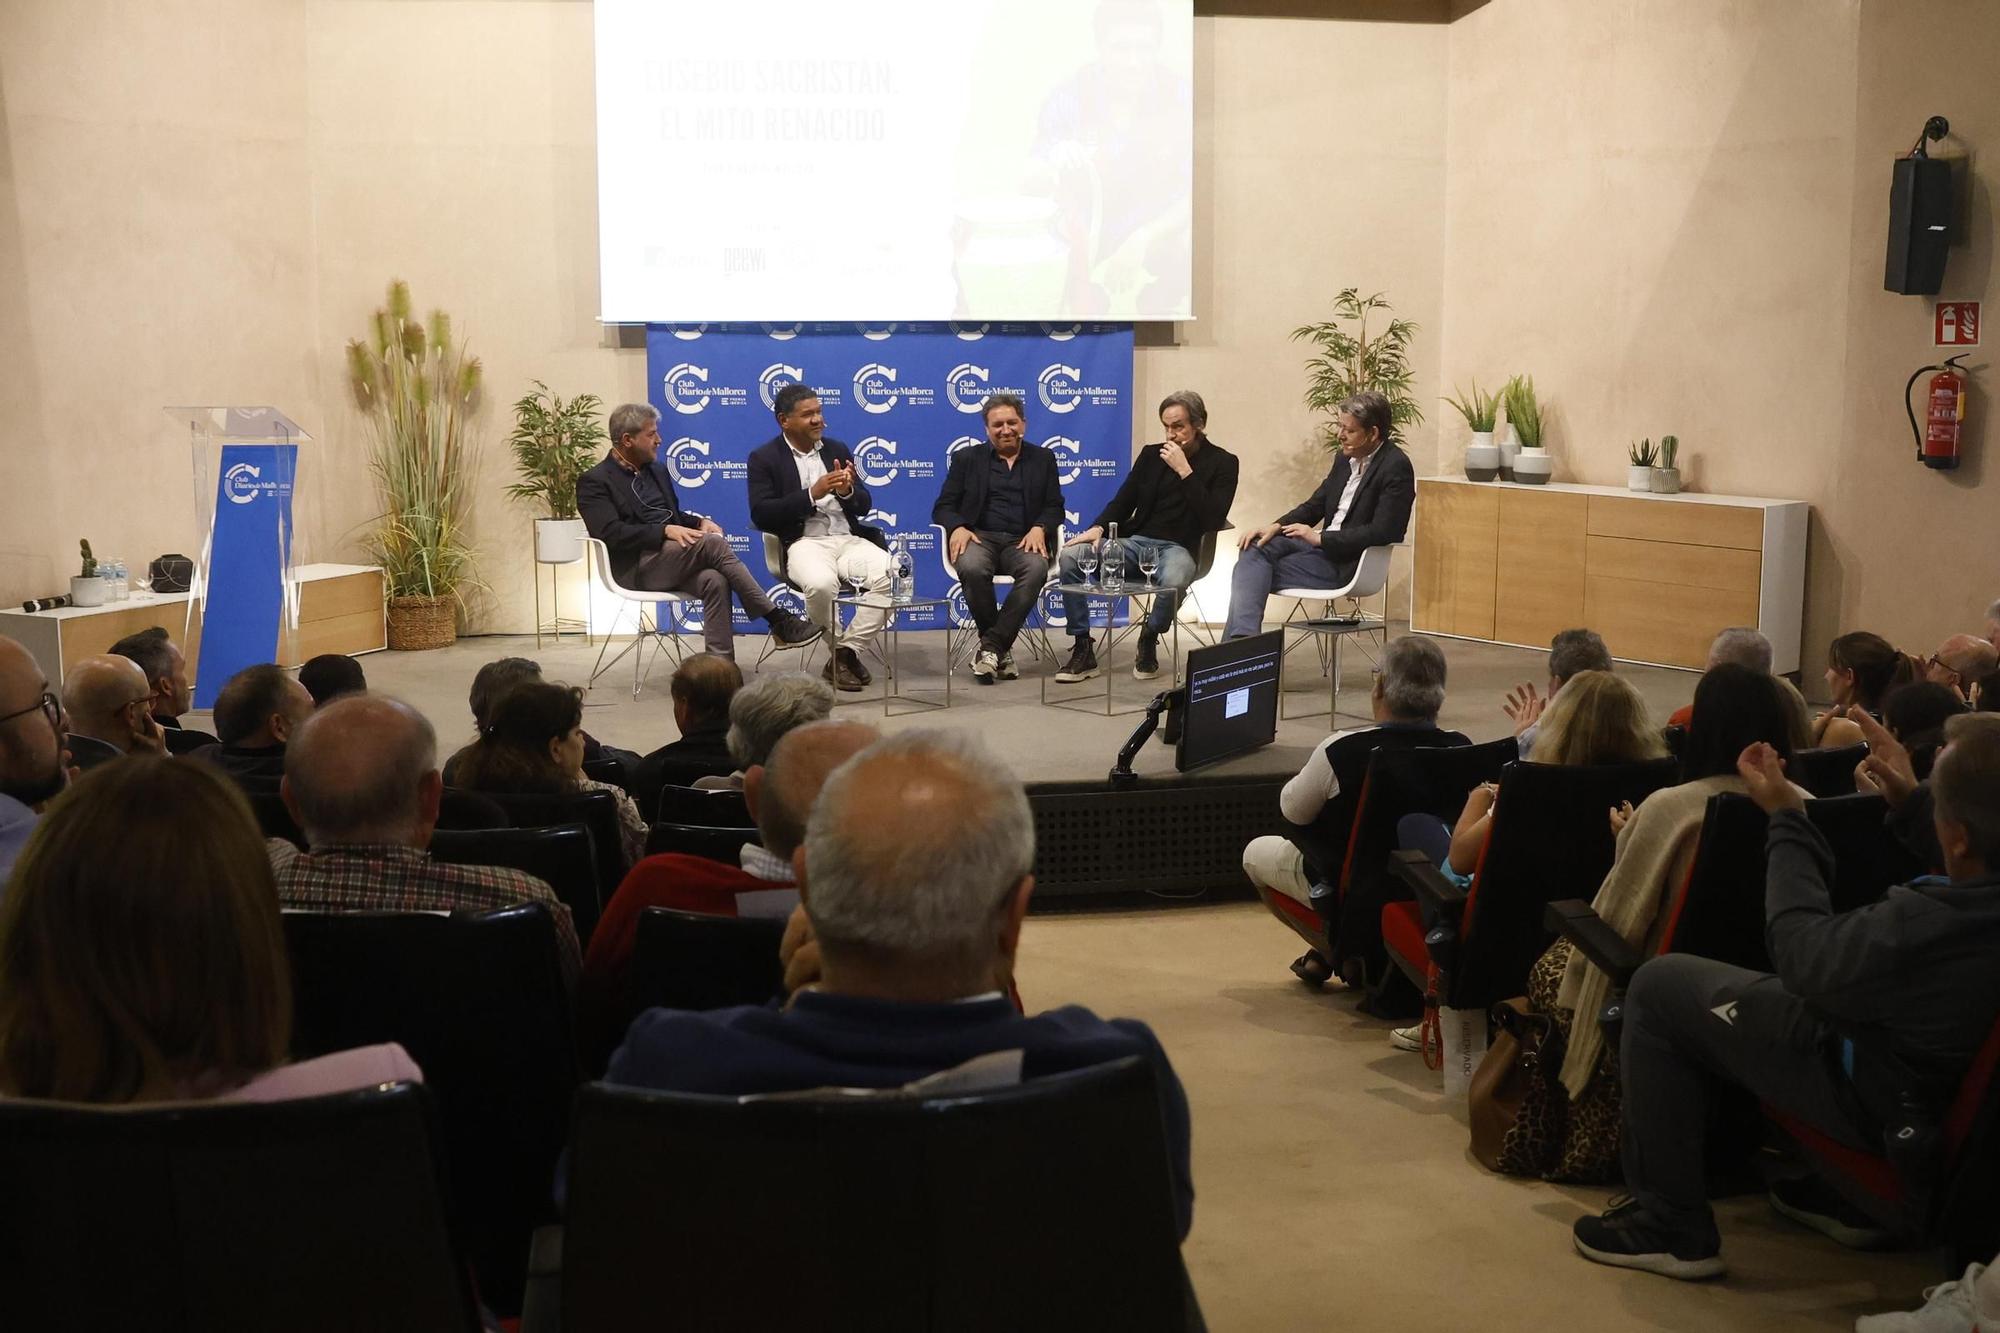 Las mejores fotos de la emocionante charla de Eusebio Sacristán en el Club Diario de Mallorca